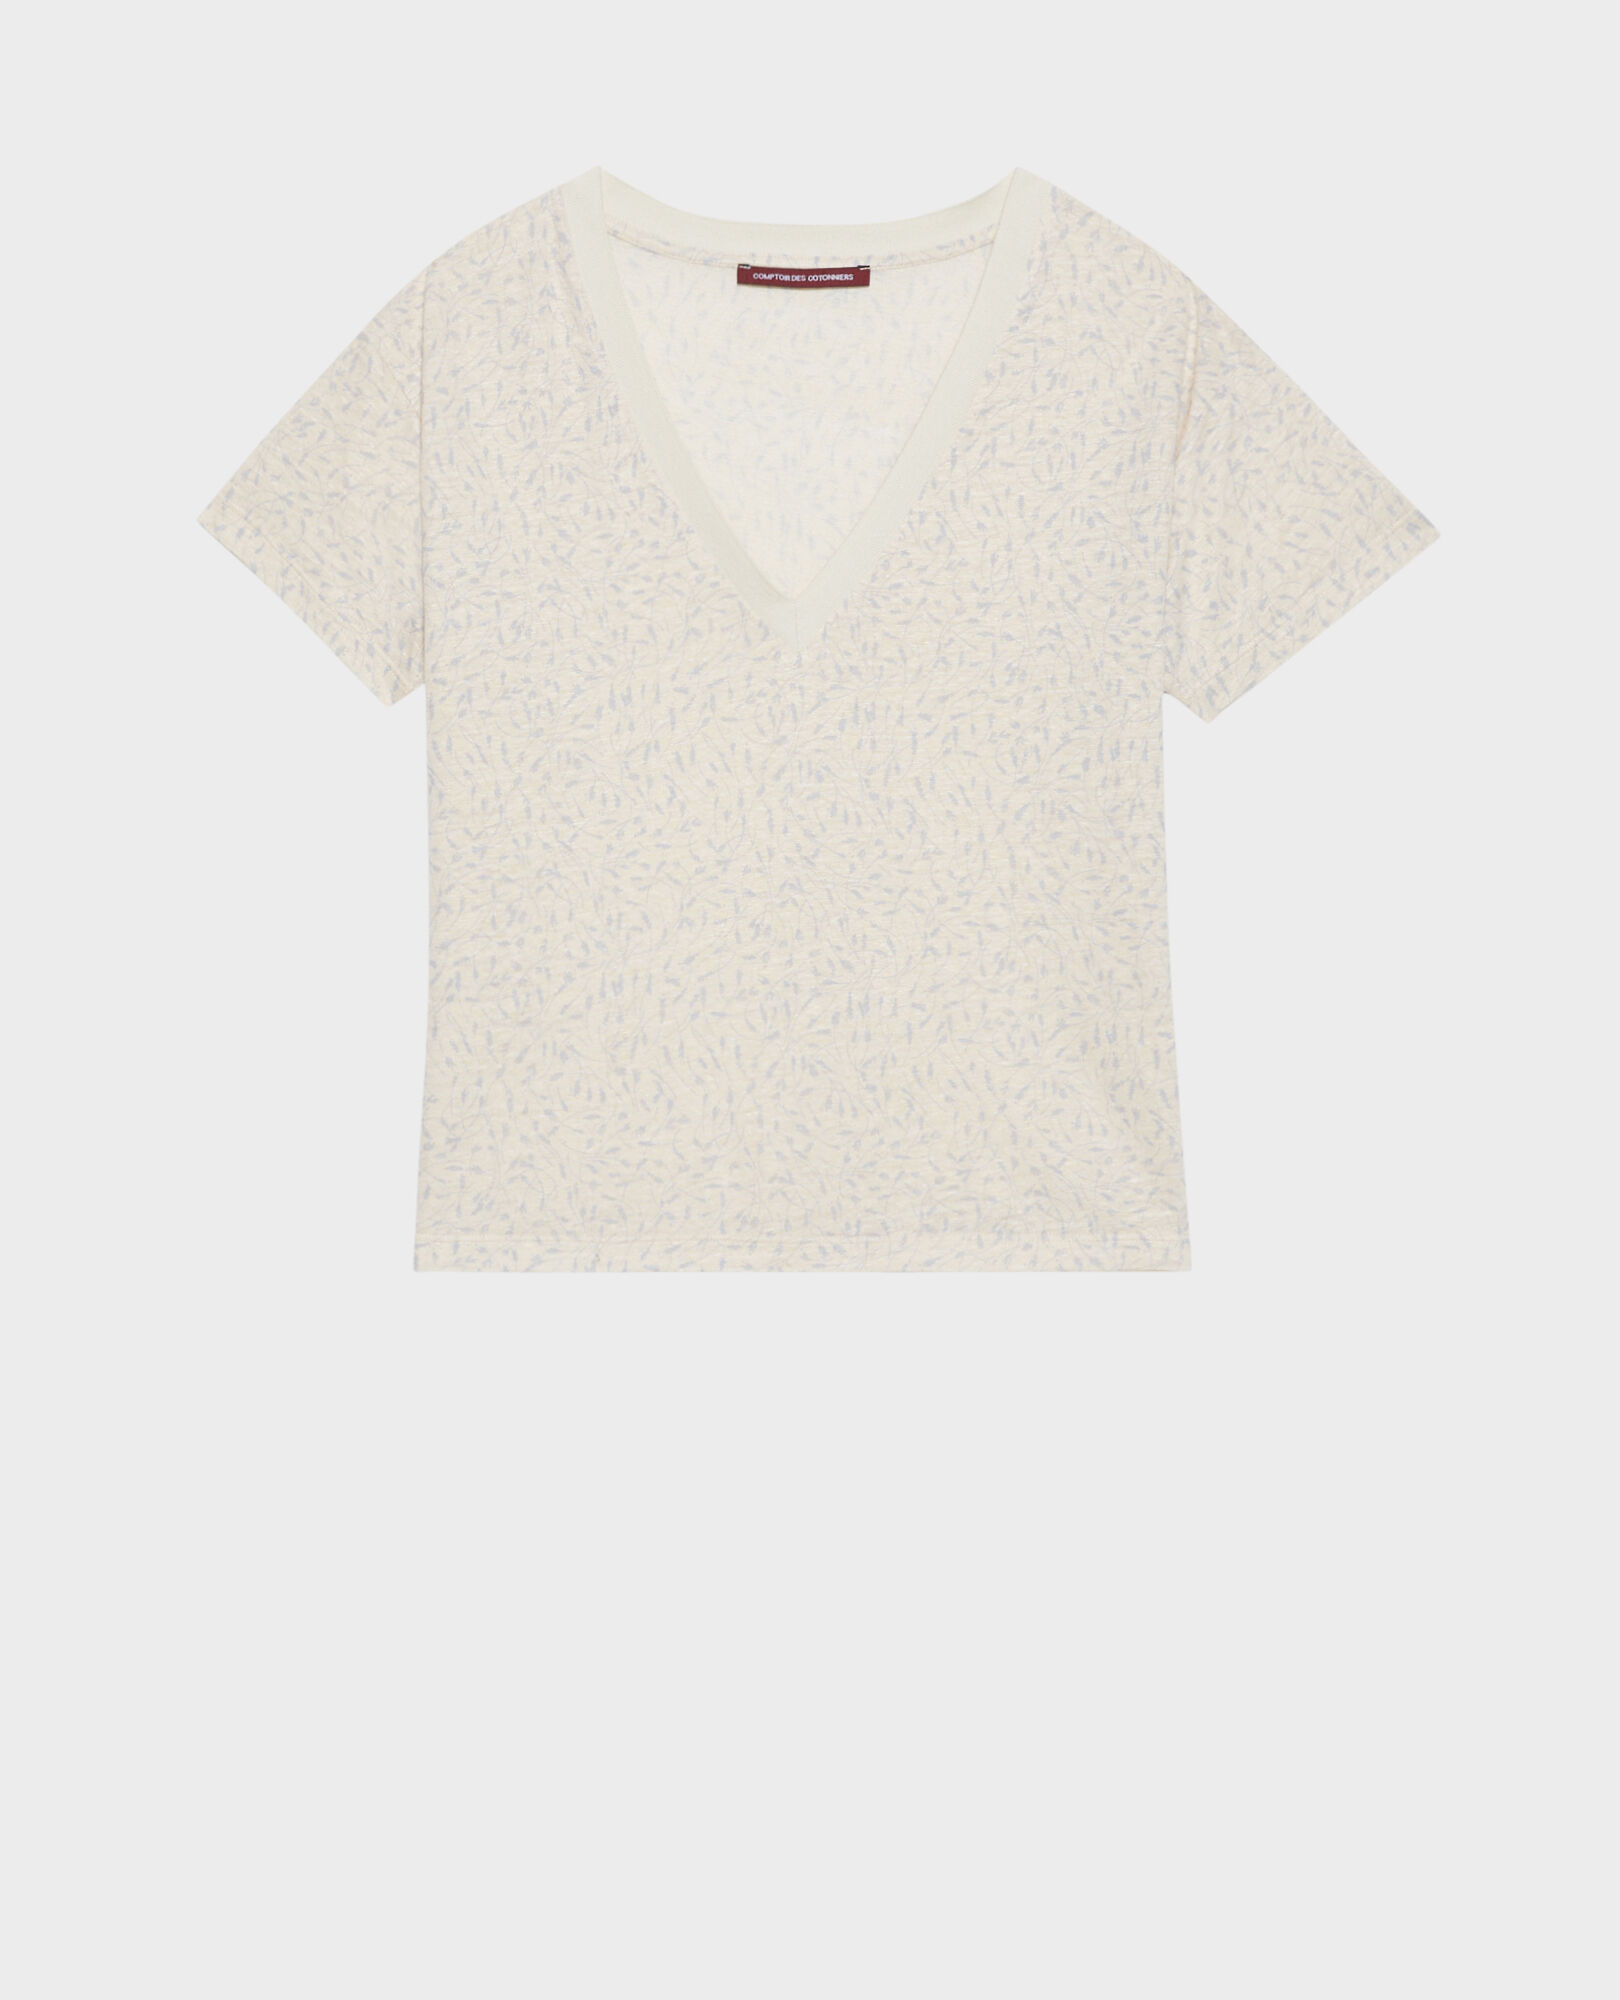 SARAH - Camiseta de lino con cuello de pico 91 print white 2ste338f05